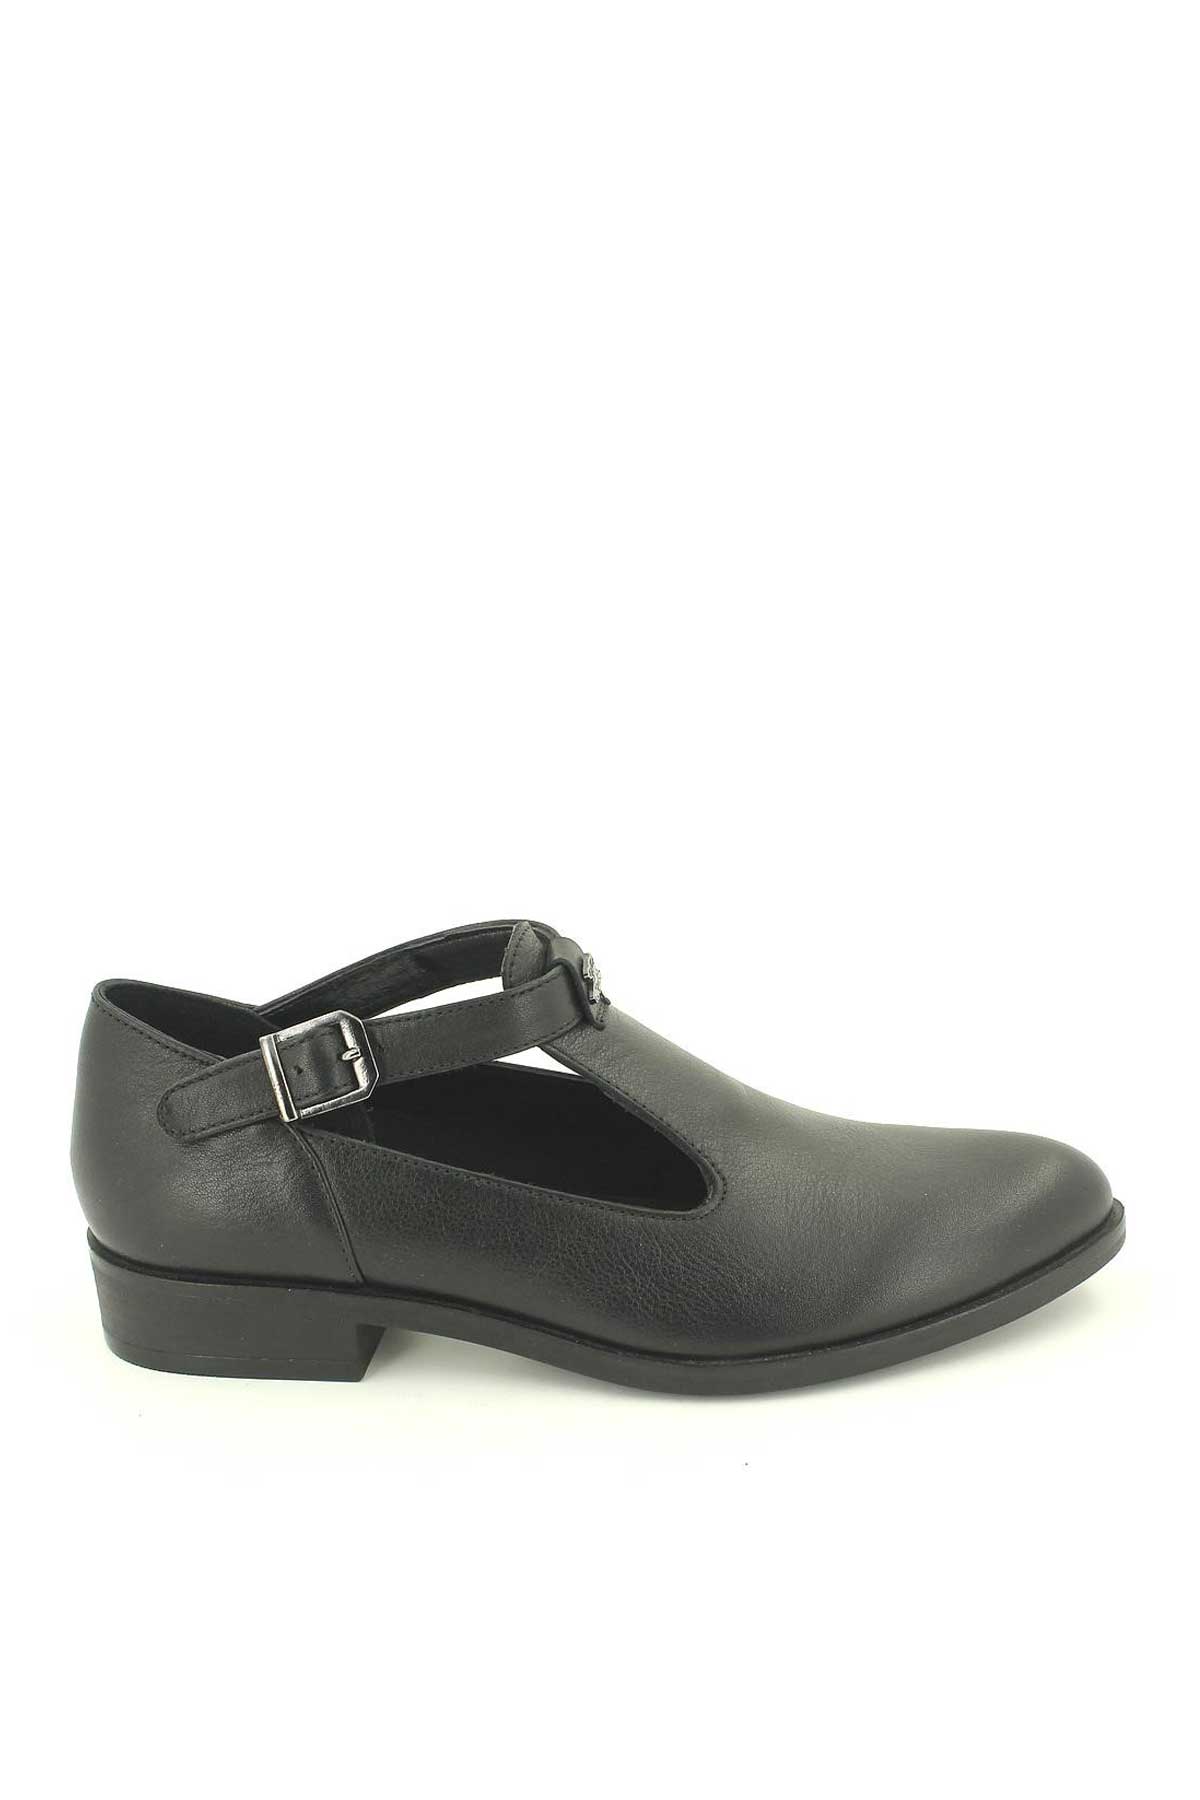 Kadın Deri Ayakkabı Siyah 145405K - Thumbnail